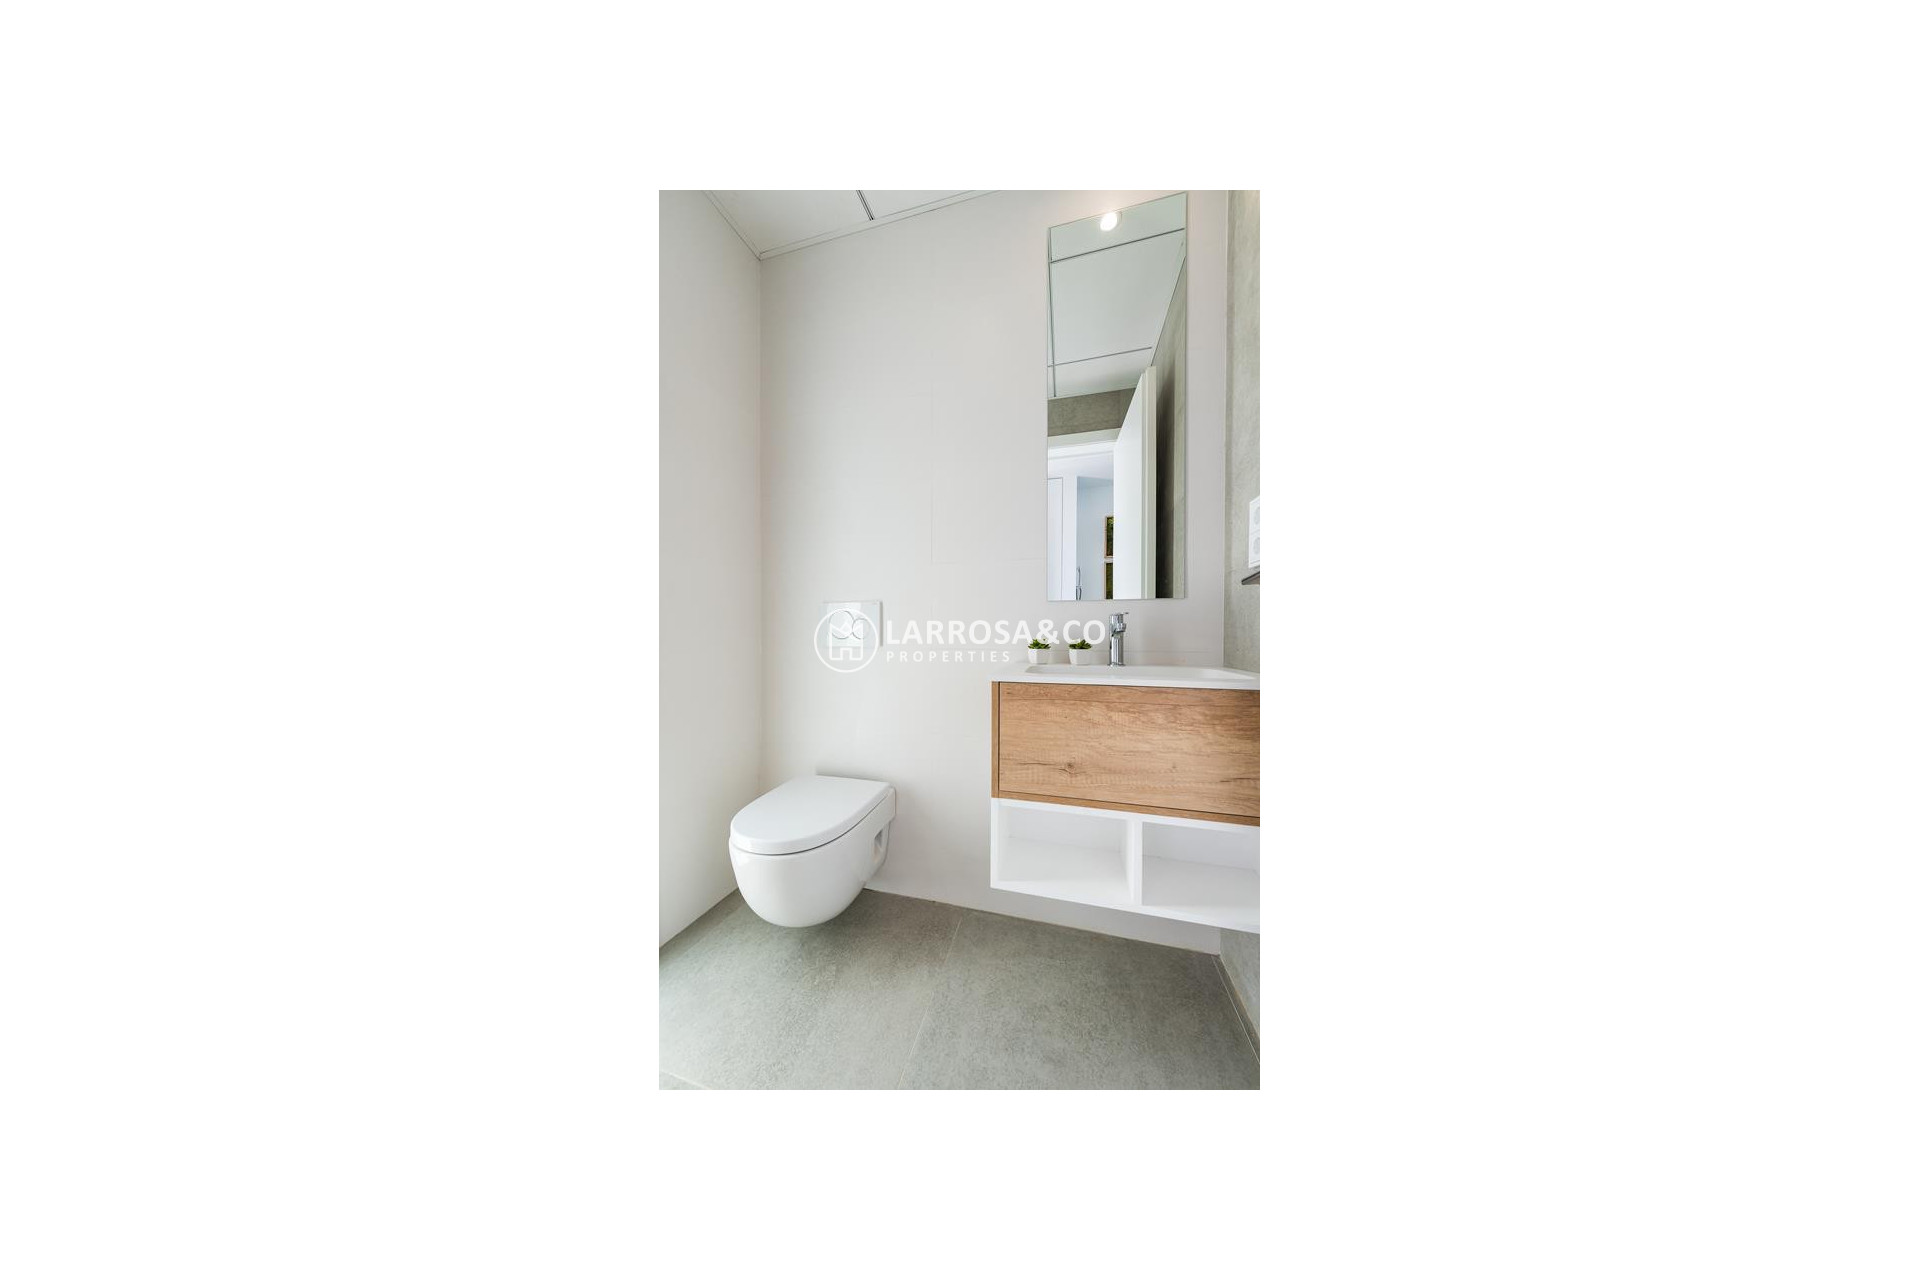 new-build-villa-rojales-restroom-on2106